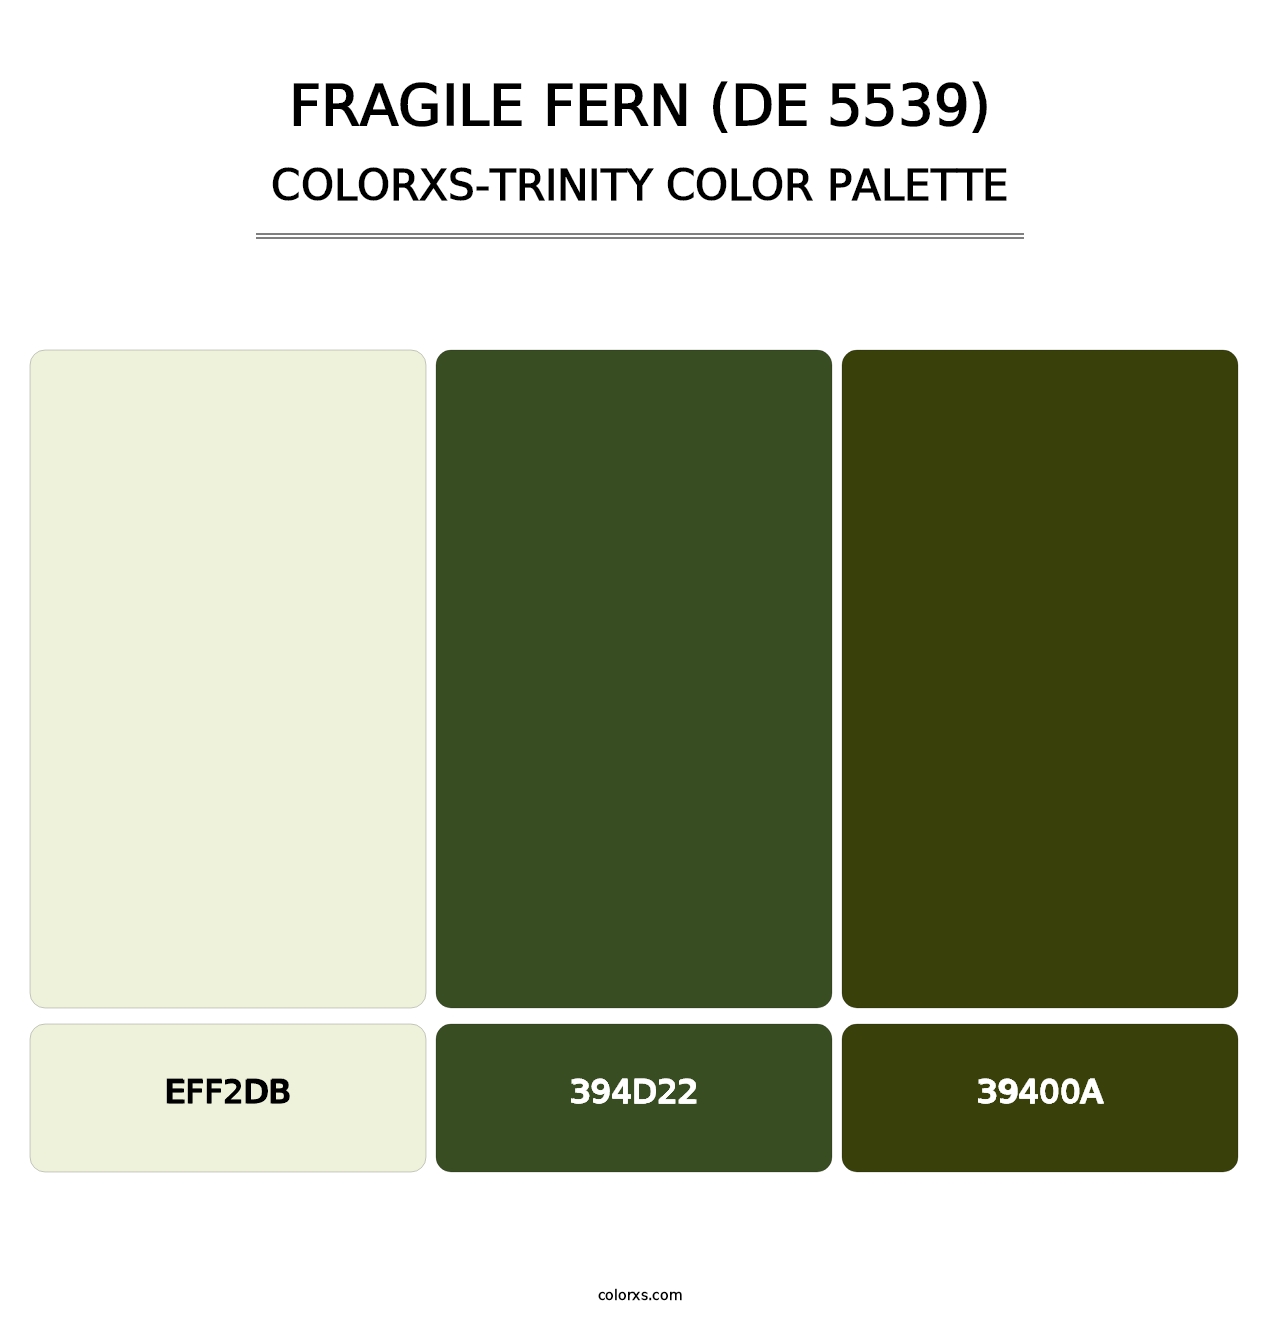 Fragile Fern (DE 5539) - Colorxs Trinity Palette